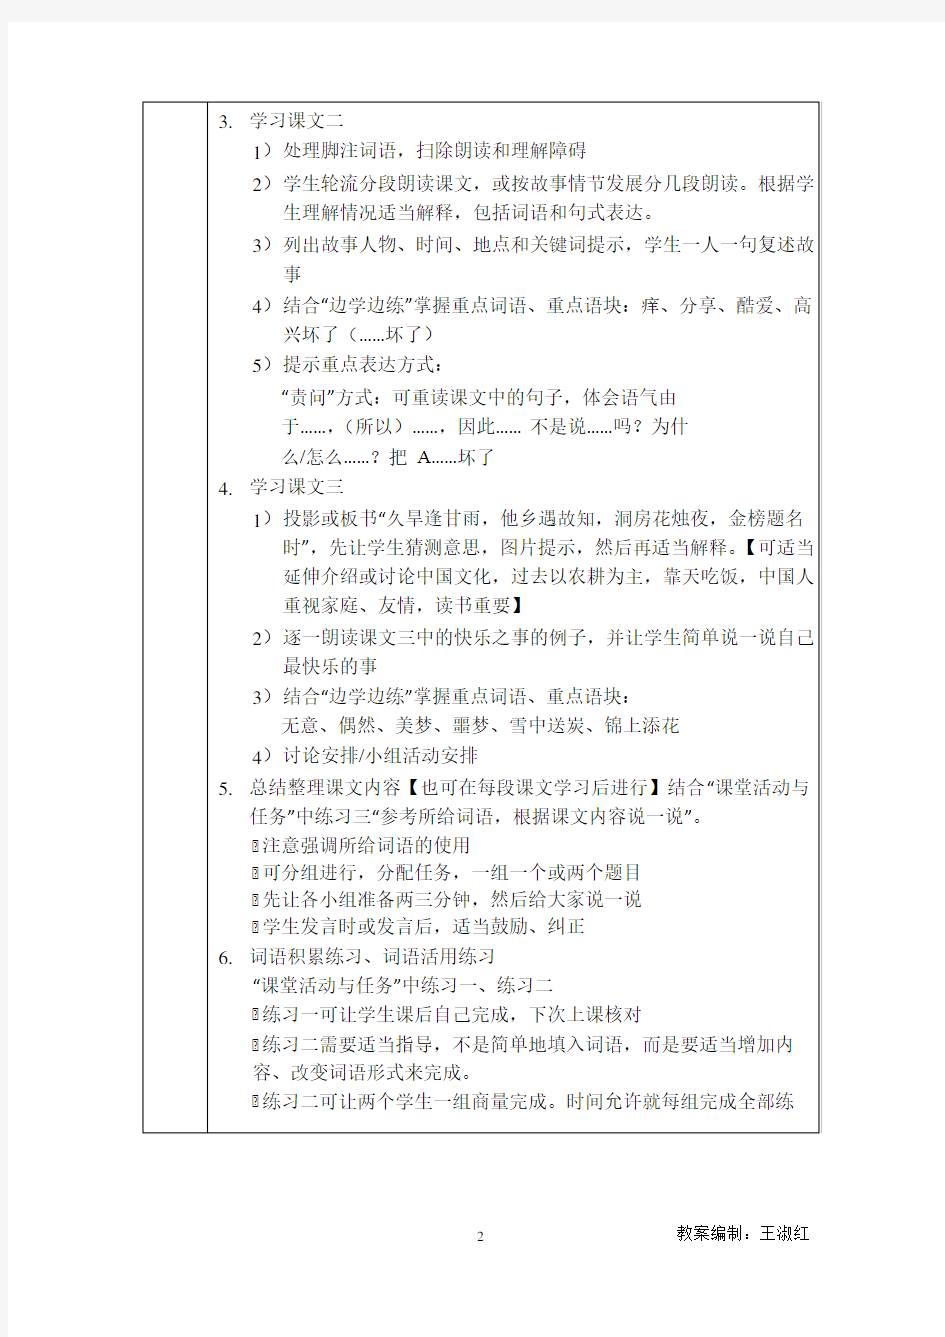 发展汉语(第二版)高级口语Ⅰ教案(1-8课)